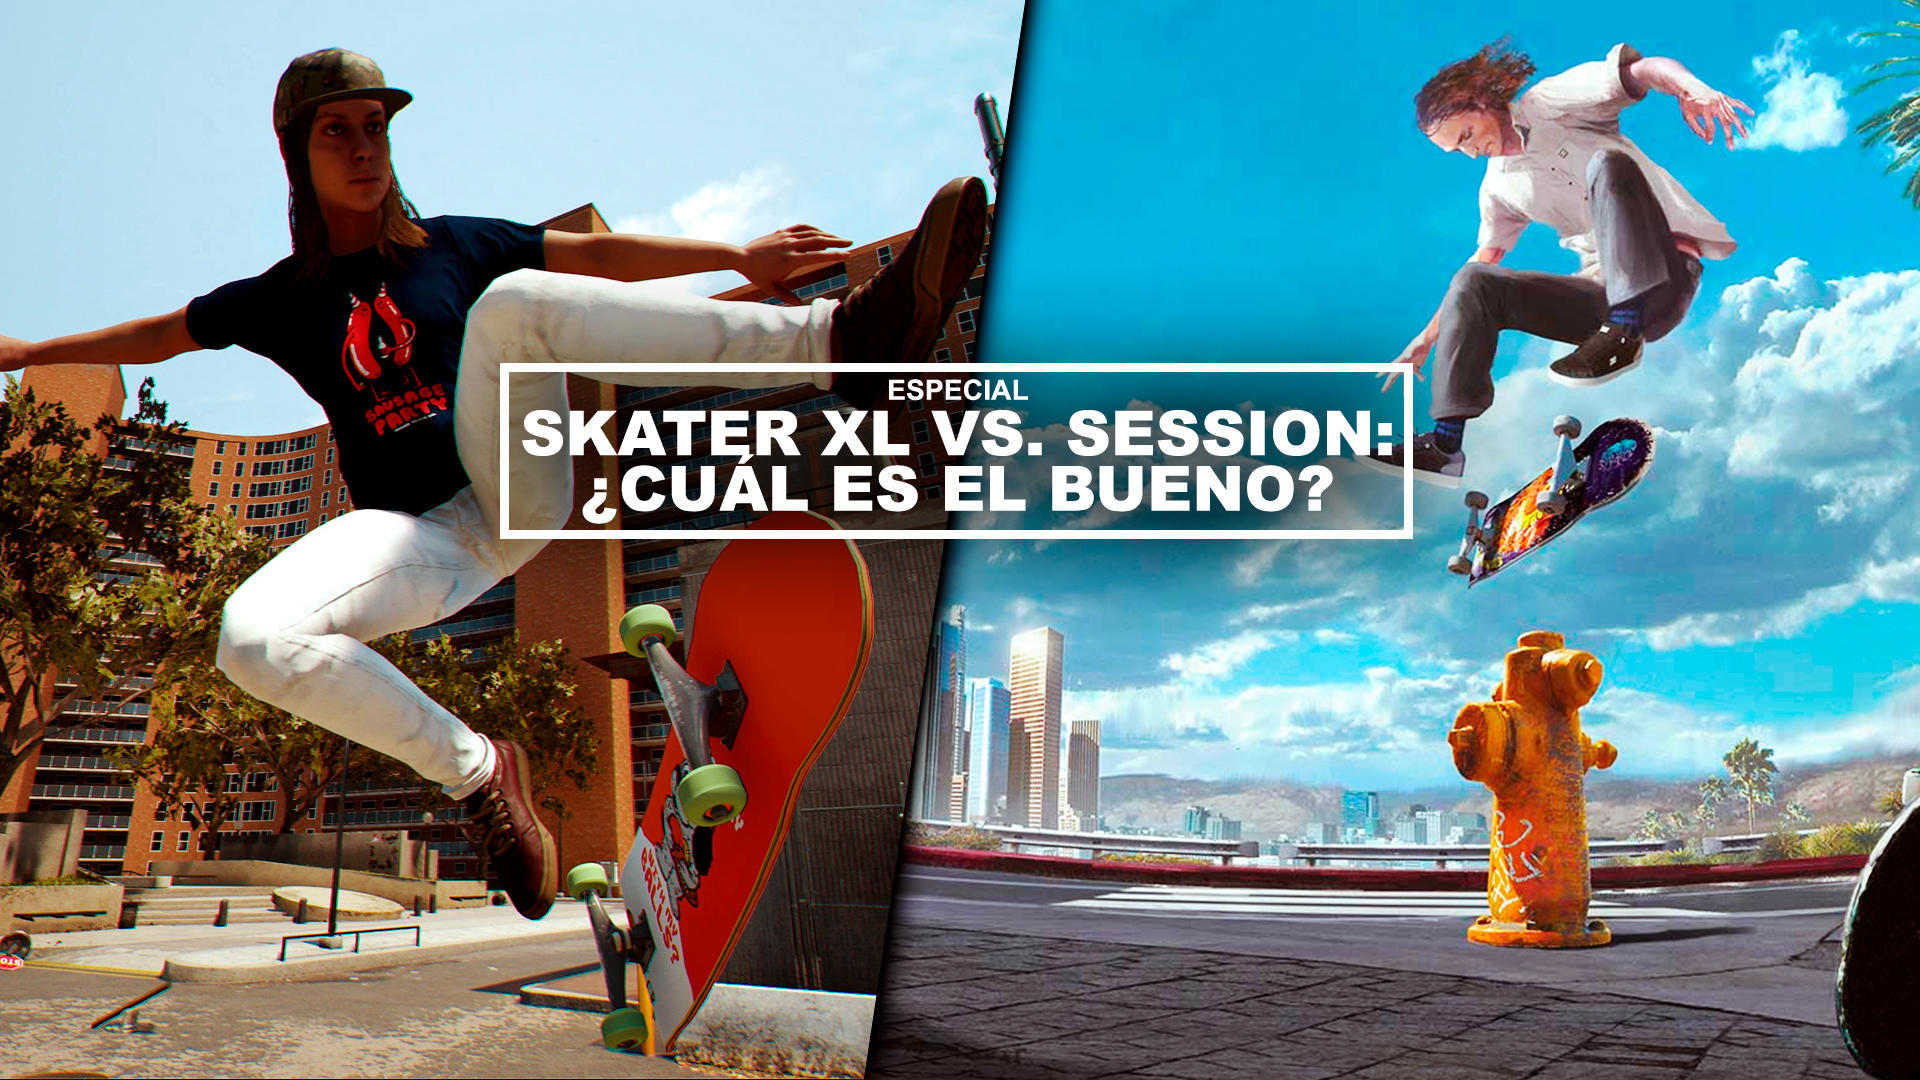 Skater XL vs. Session: cul es el bueno?